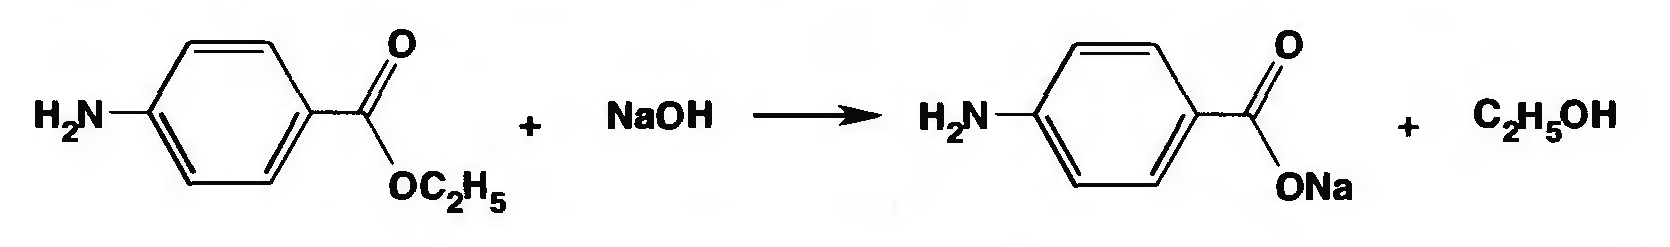 Щелочной гидролиз изопропилацетата реакция. Анестезин йодоформная проба реакция. Щелочной гидролиз анестезина реакция. Кислотный гидролиз анестезина реакция. Реакция образования йодоформа анестезин.